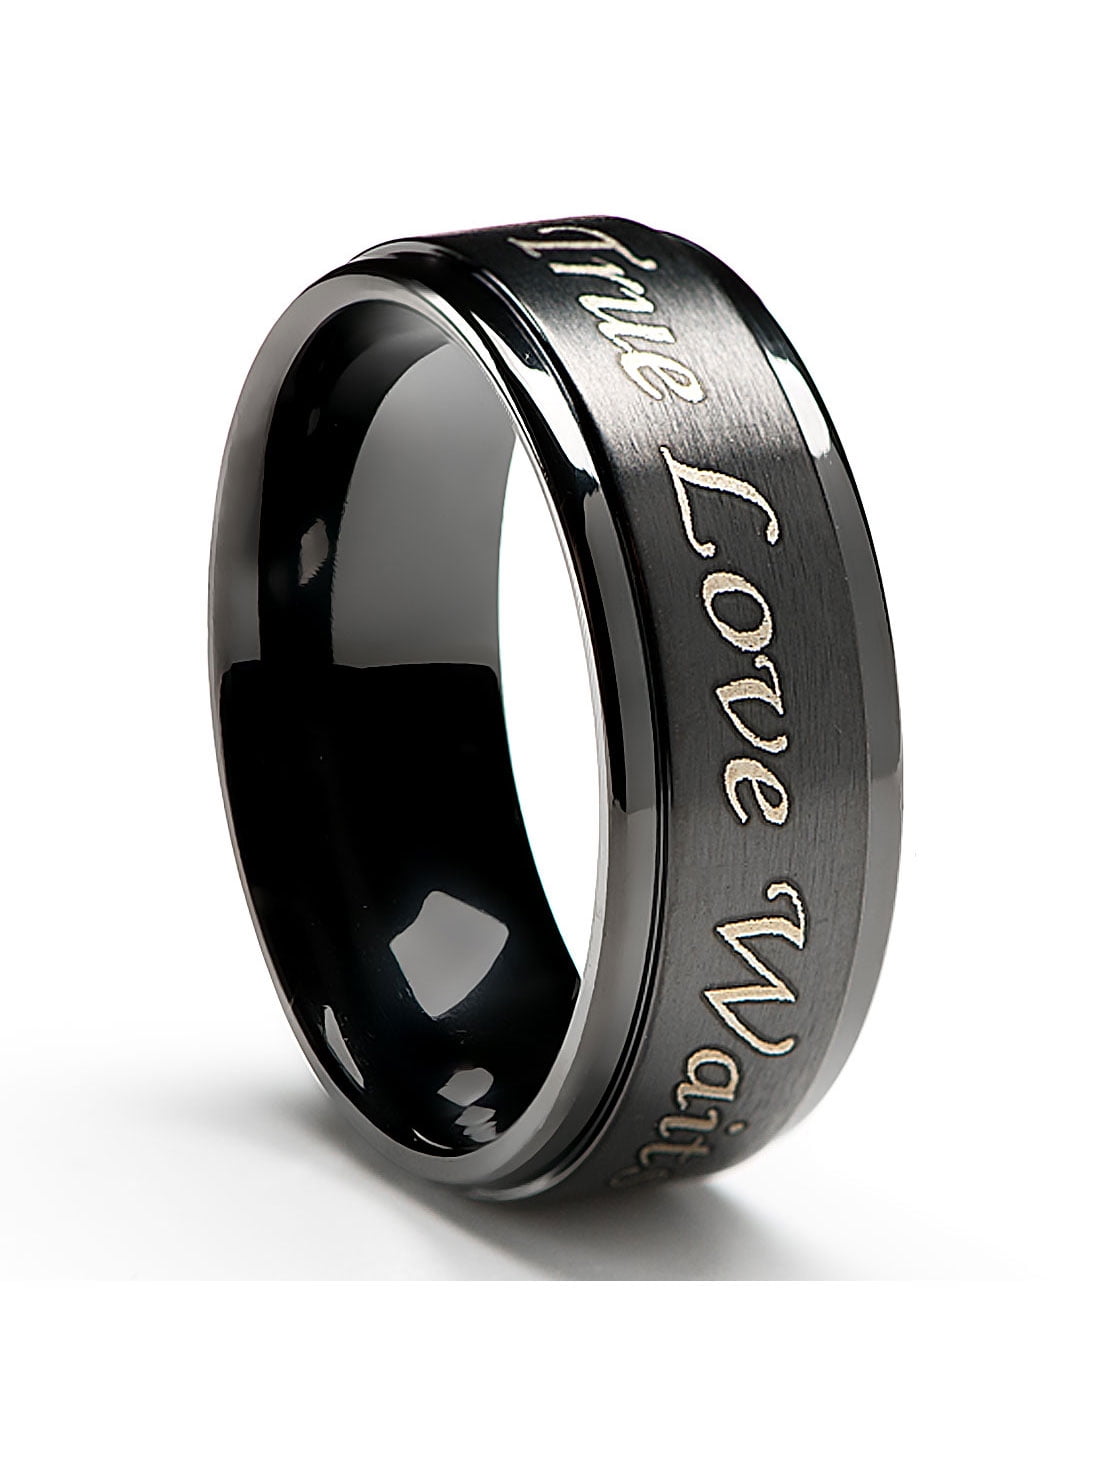 Purity Ring in Titanium 8MM wide True Love Waits Black Plated 3bd806ea ea14 4acb bf48 45ce70eab1a0 1.777257125a5c76ee5e95e1e4889d0fd5